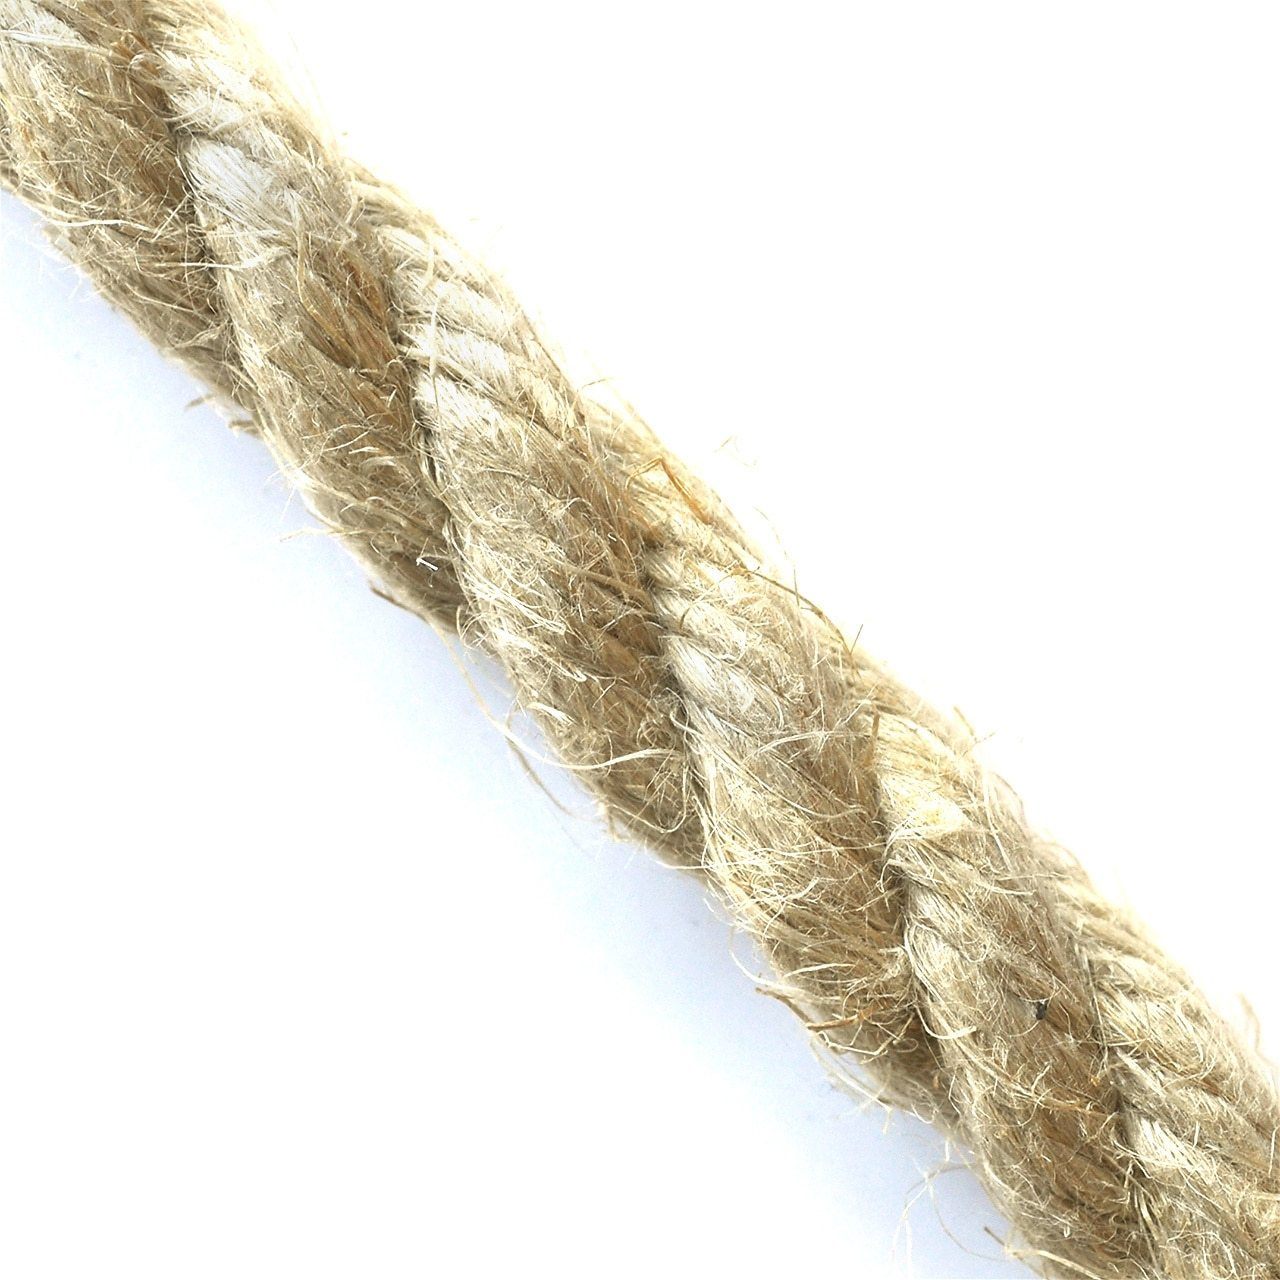 natural rope